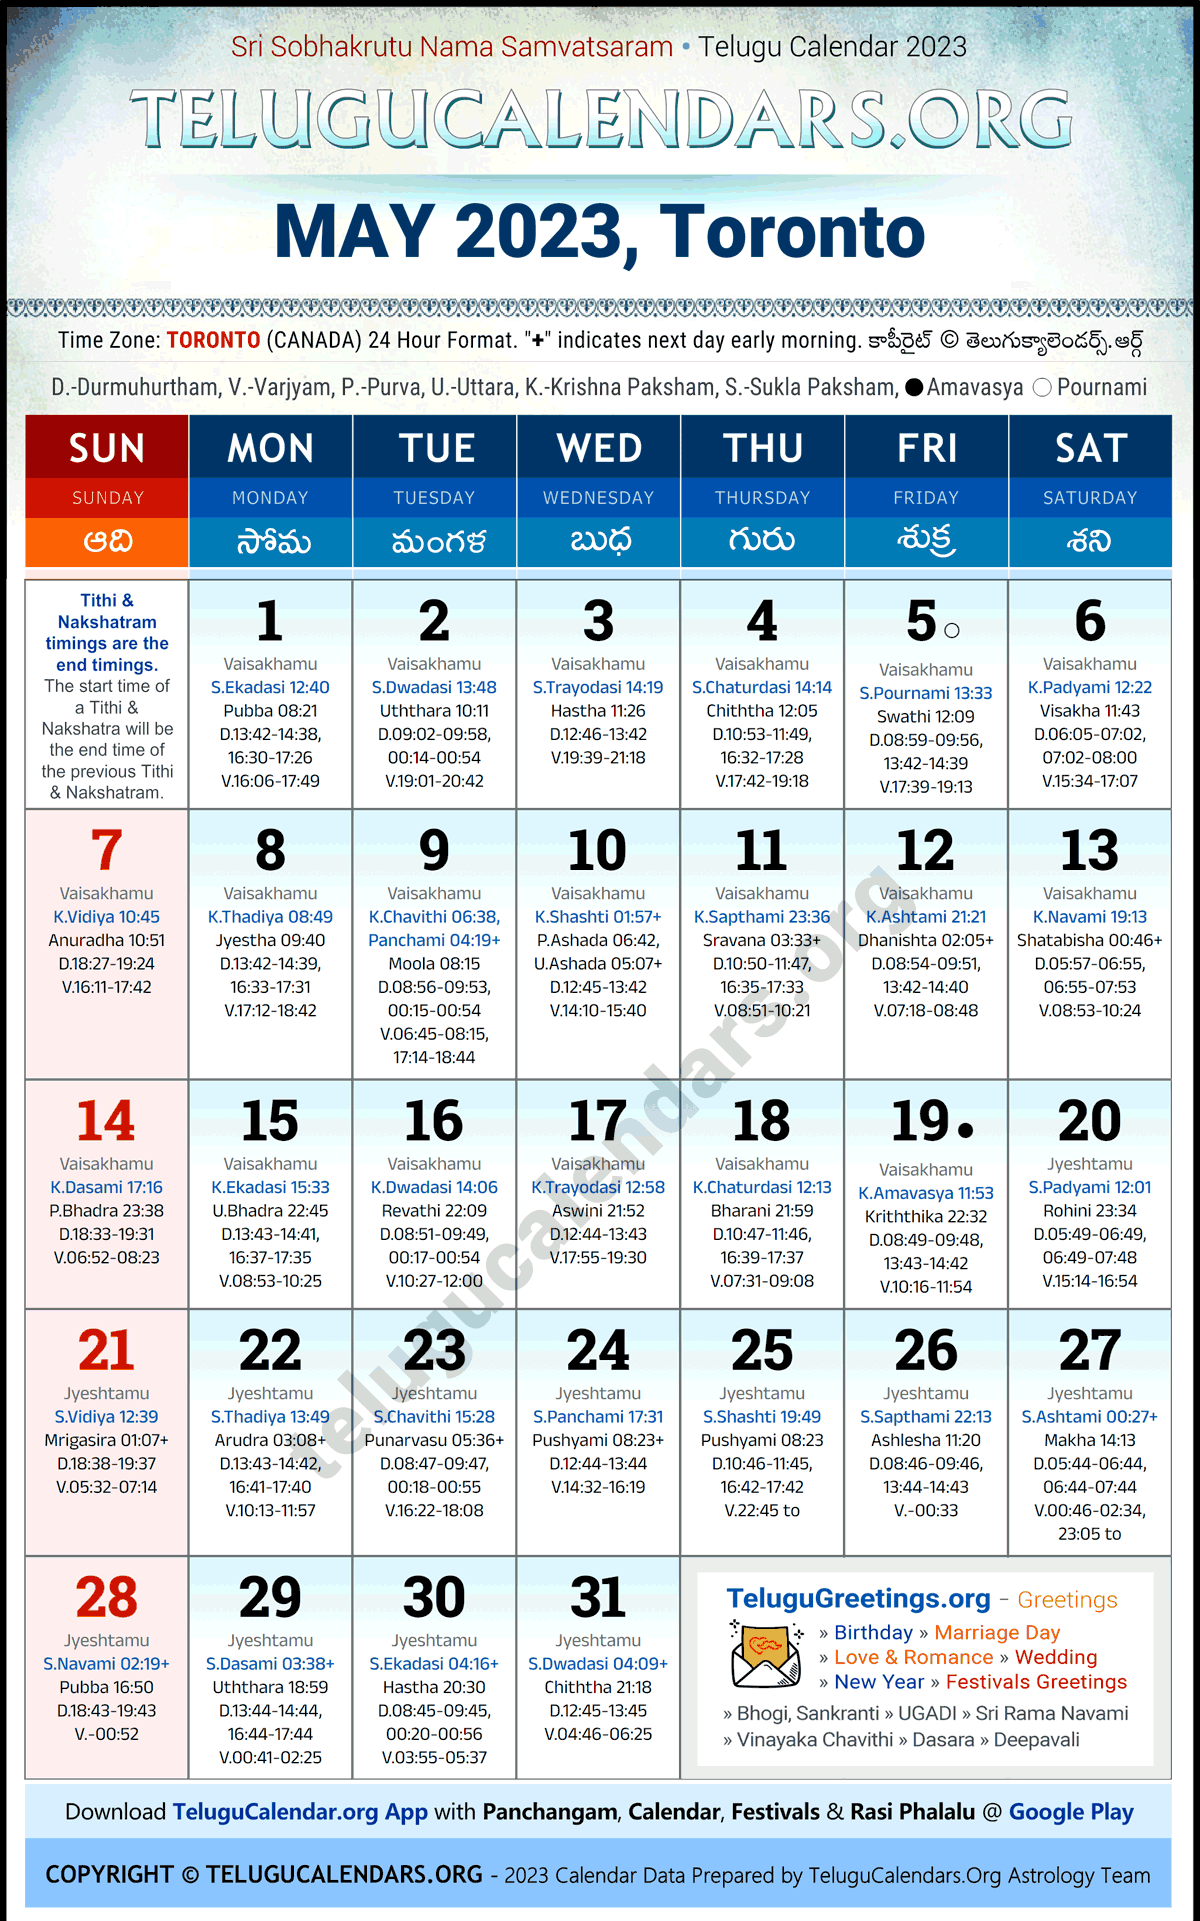 Telugu Calendar 2023 May Festivals for Toronto